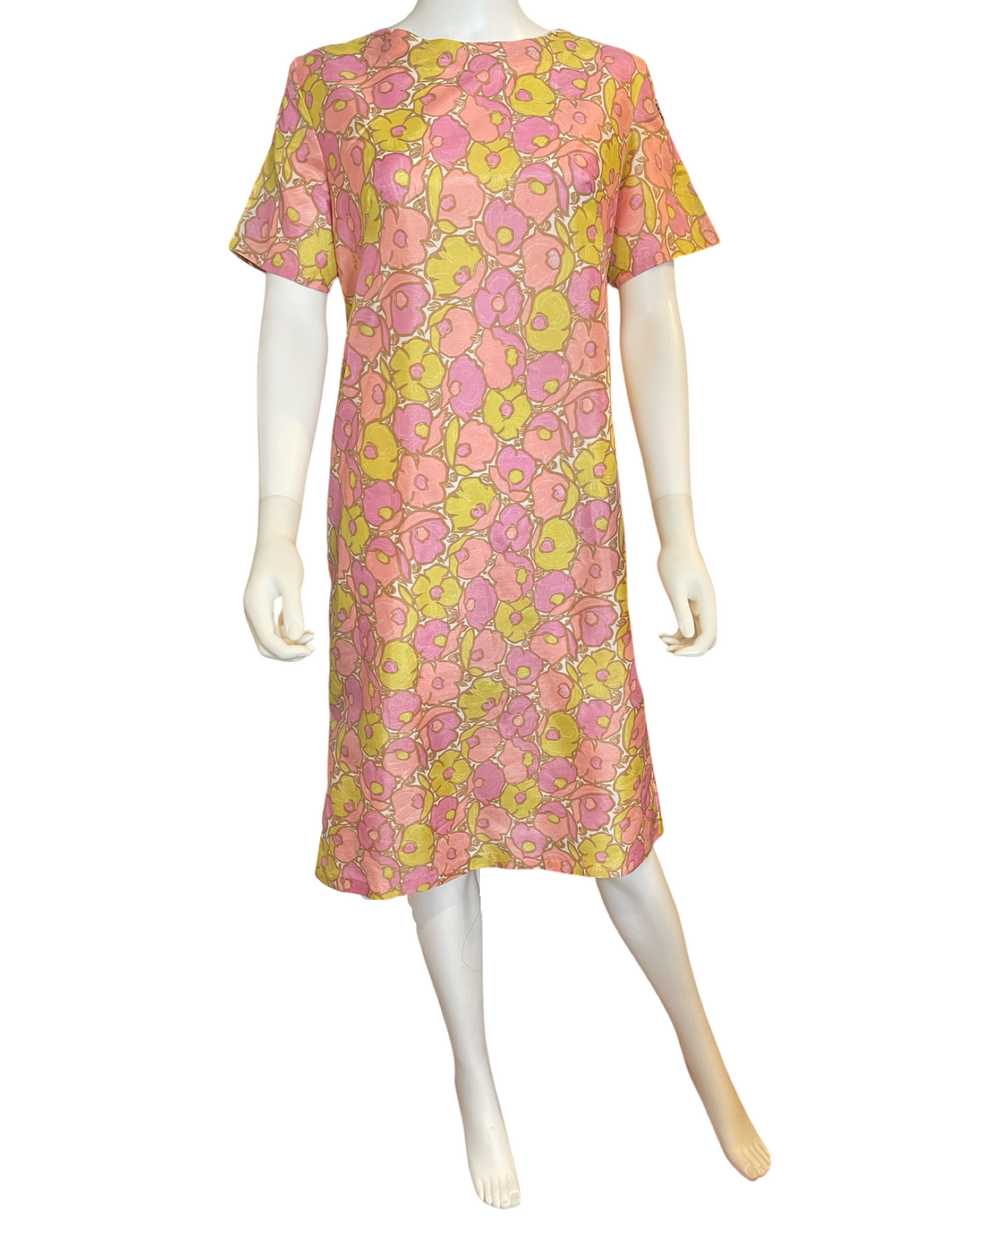 Vintage 60’s Floral Shift Dress - image 2